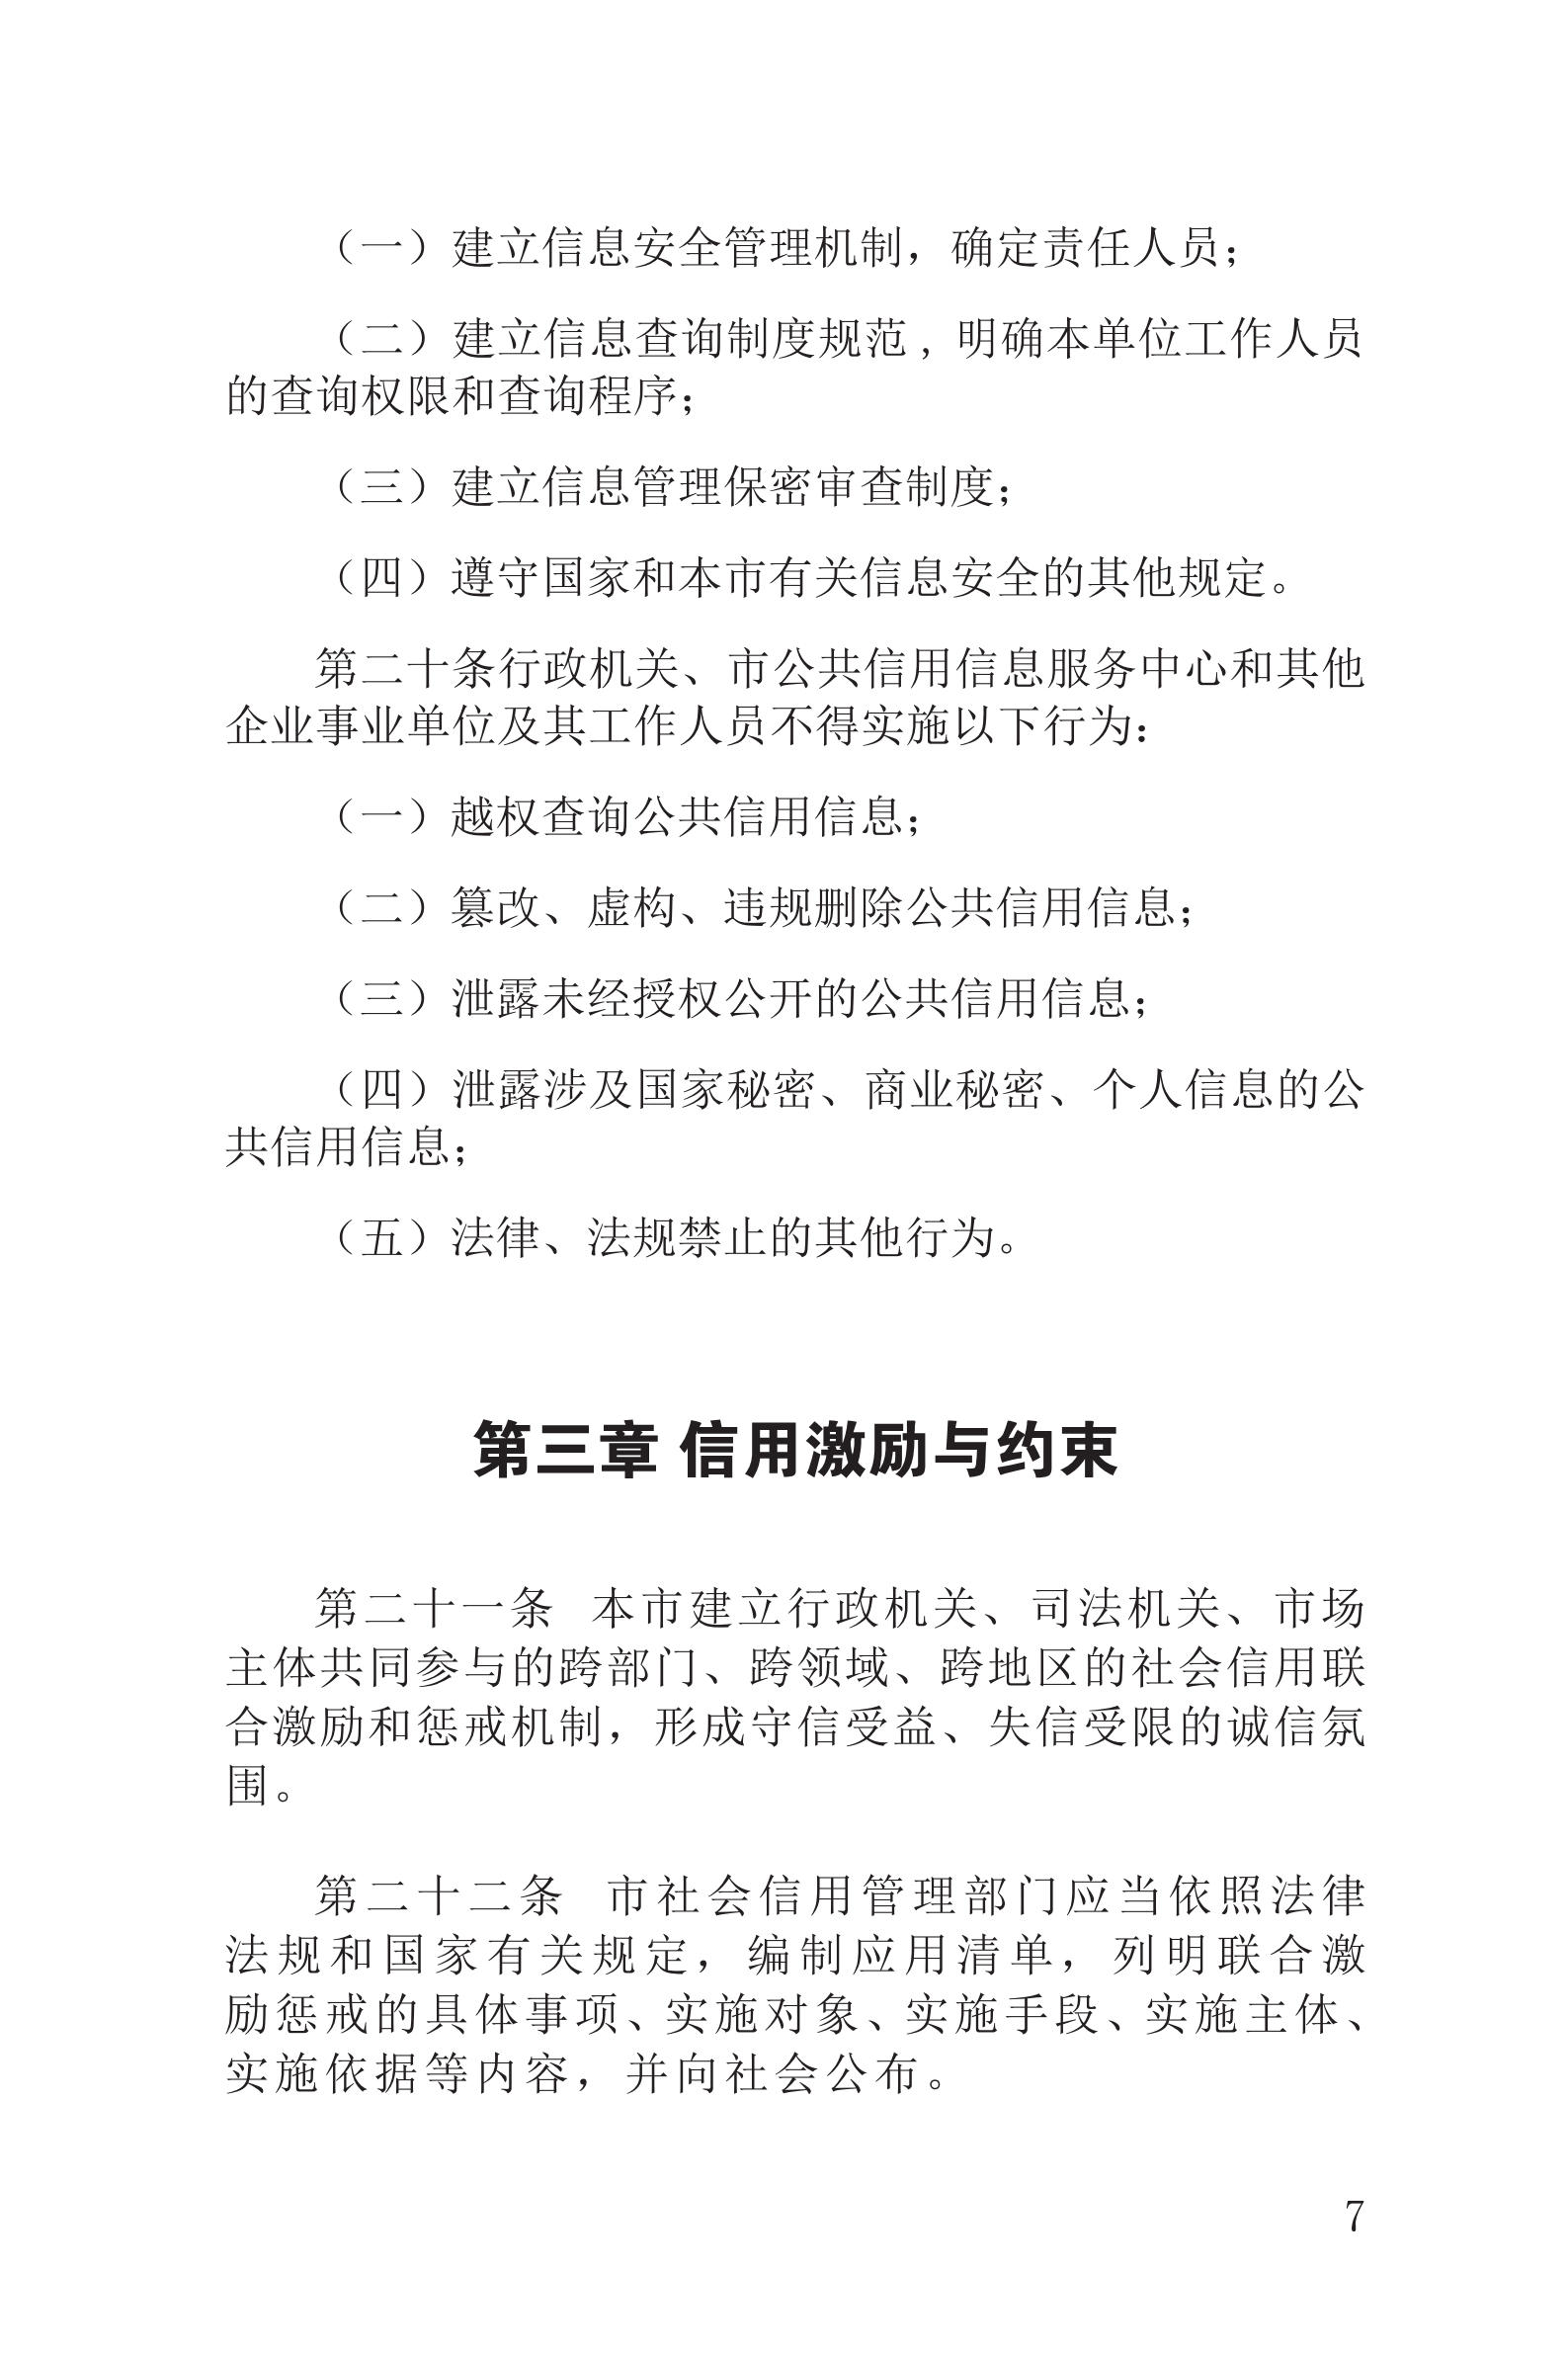 上海市社会信用条例_08.png